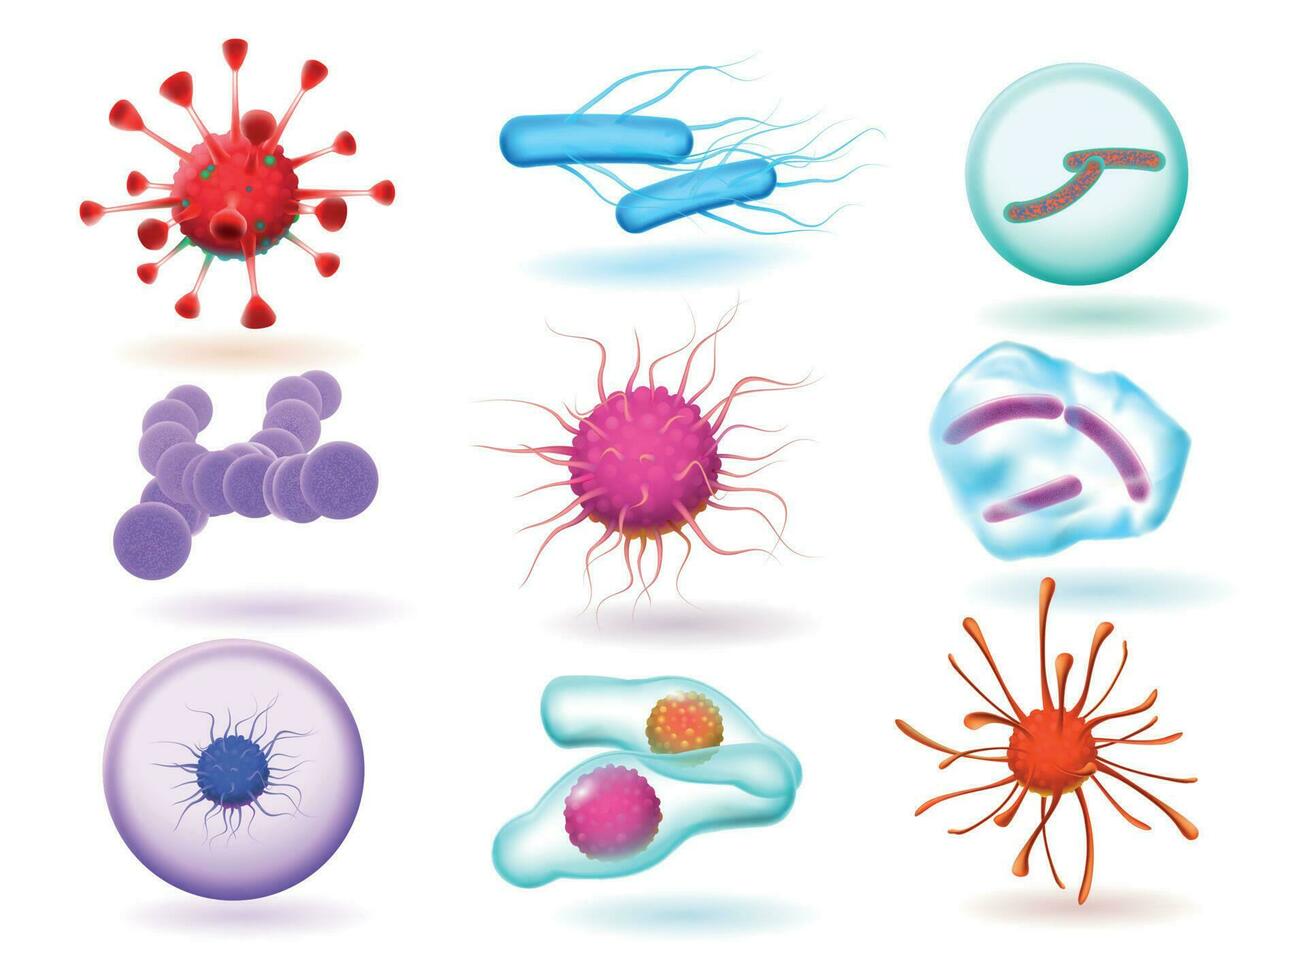 realistisch 3d Mikrobiologie Bakterien, verschiedene Virus, Natur Mikroorganismus und Wissenschaft von mikroskopisch Viren isoliert Vektor einstellen